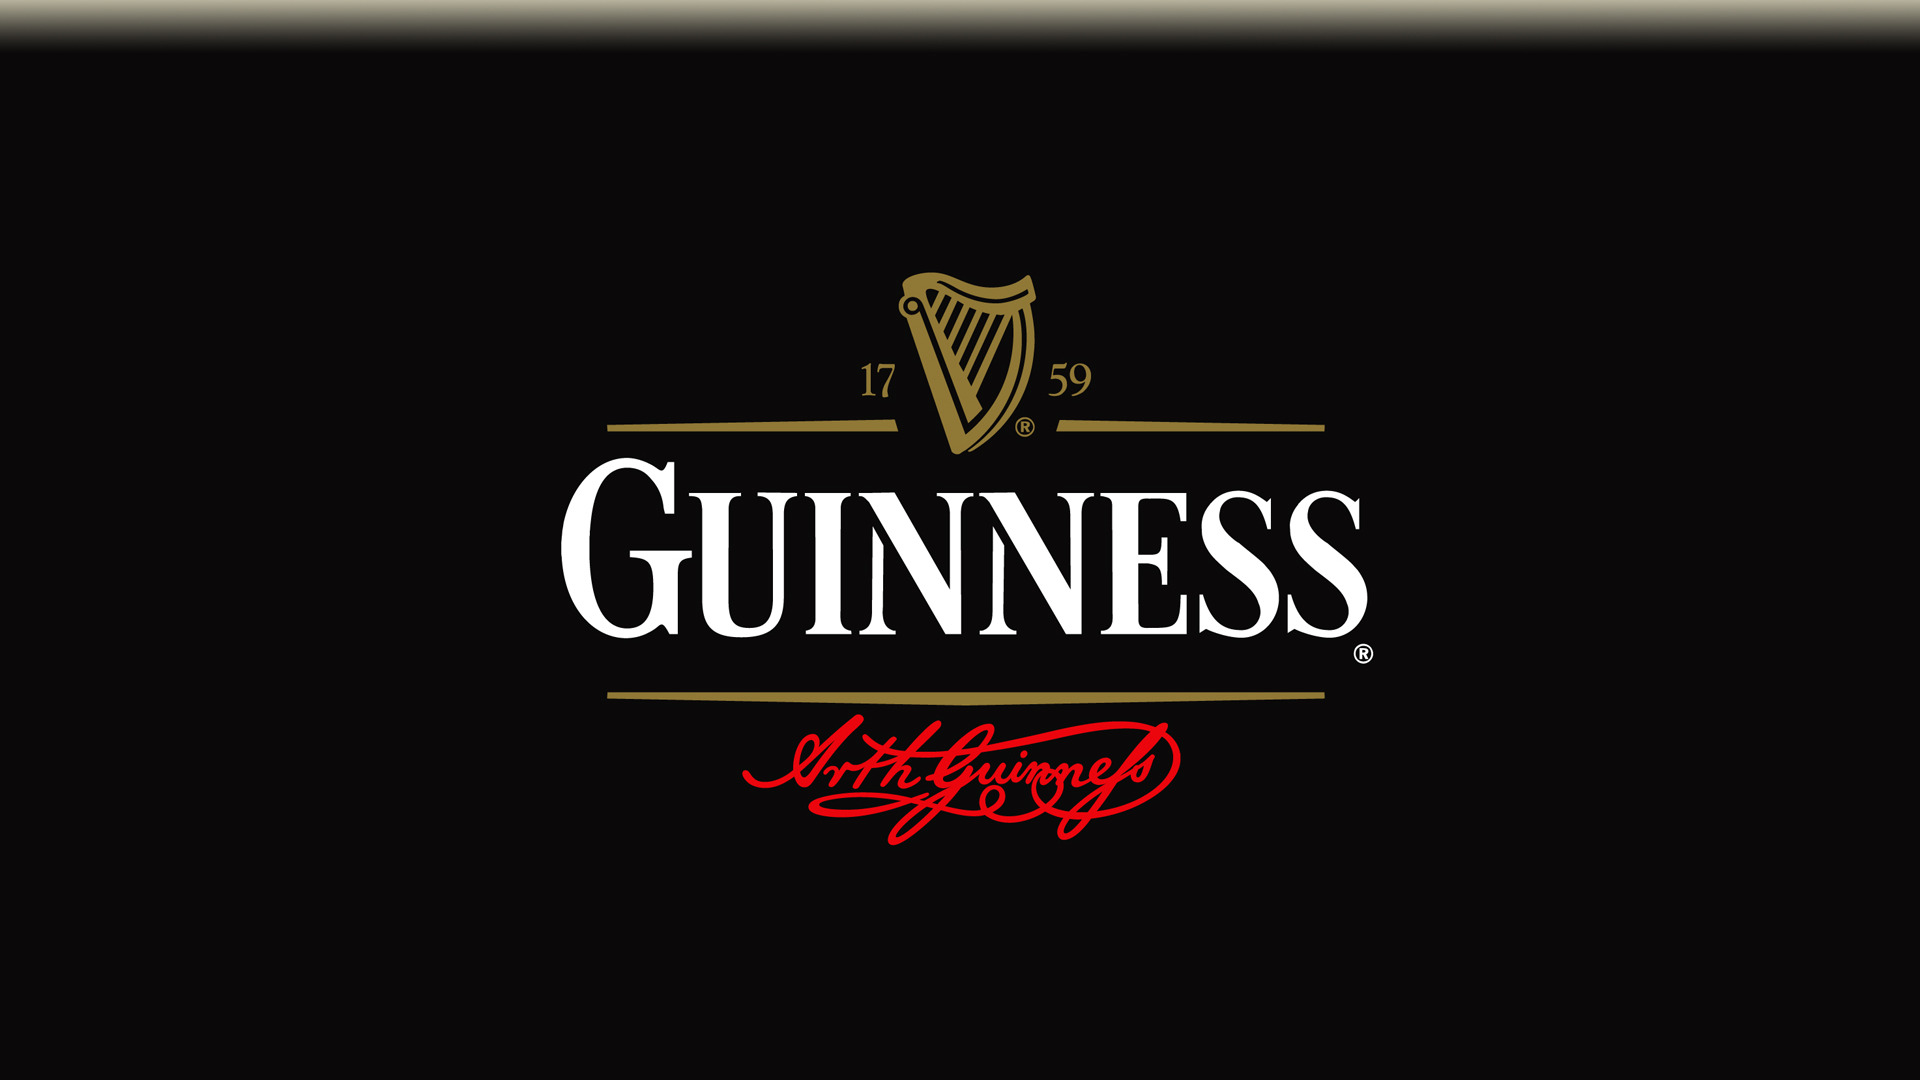 Guinness wallpaper (guinness_002.jpg)